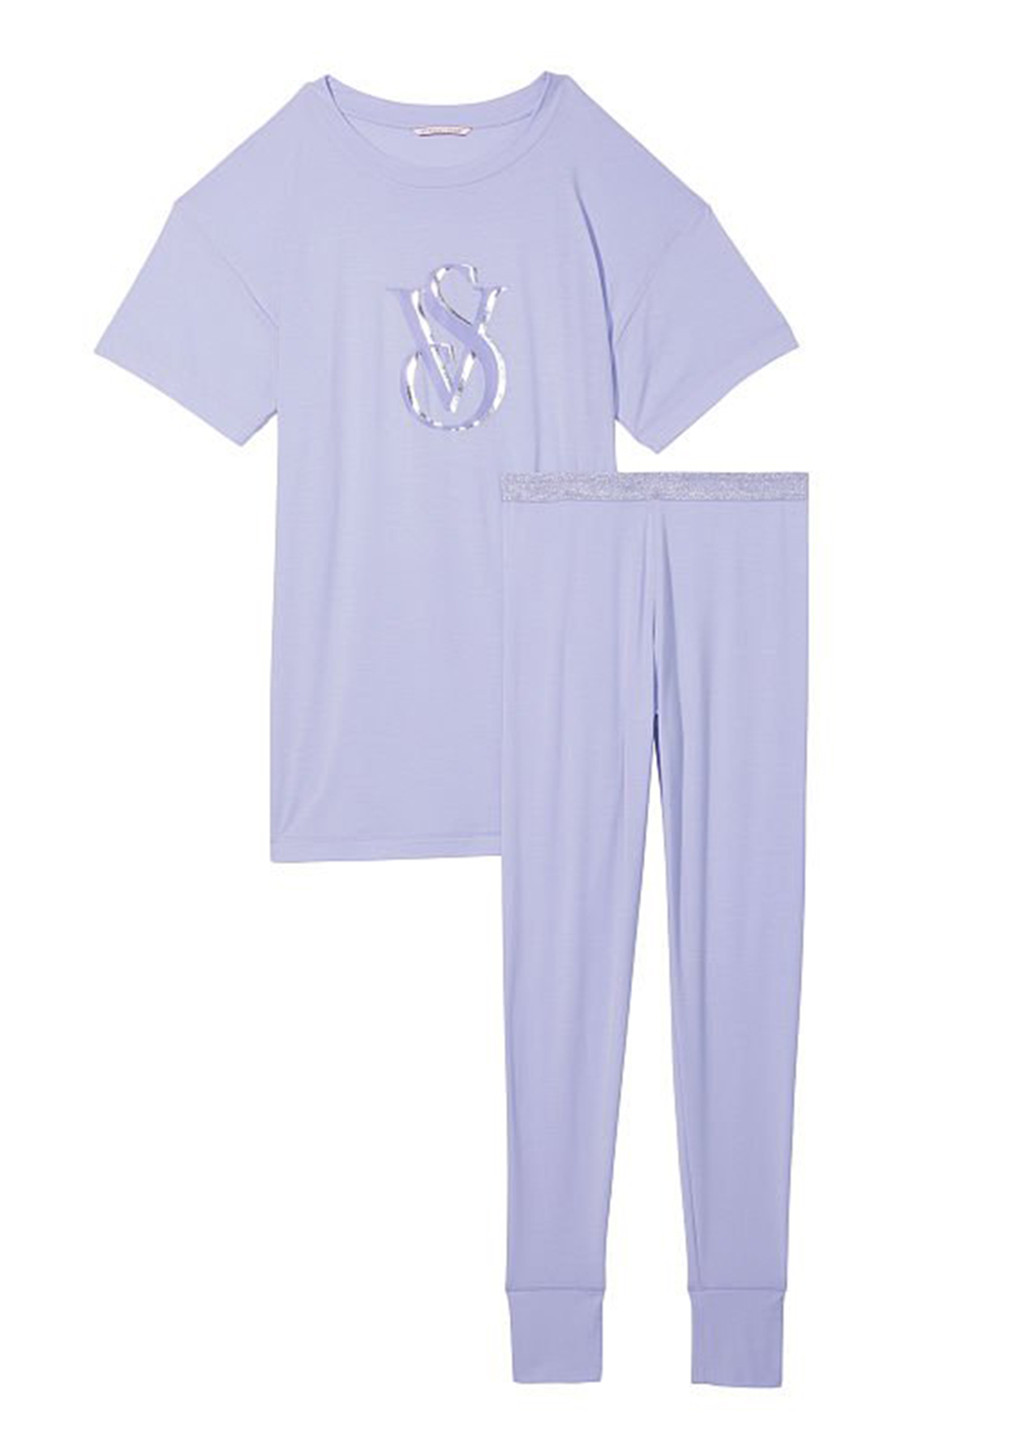 Сиреневая всесезон пижама (футболка, леггинсы) футболка + брюки Victoria's Secret